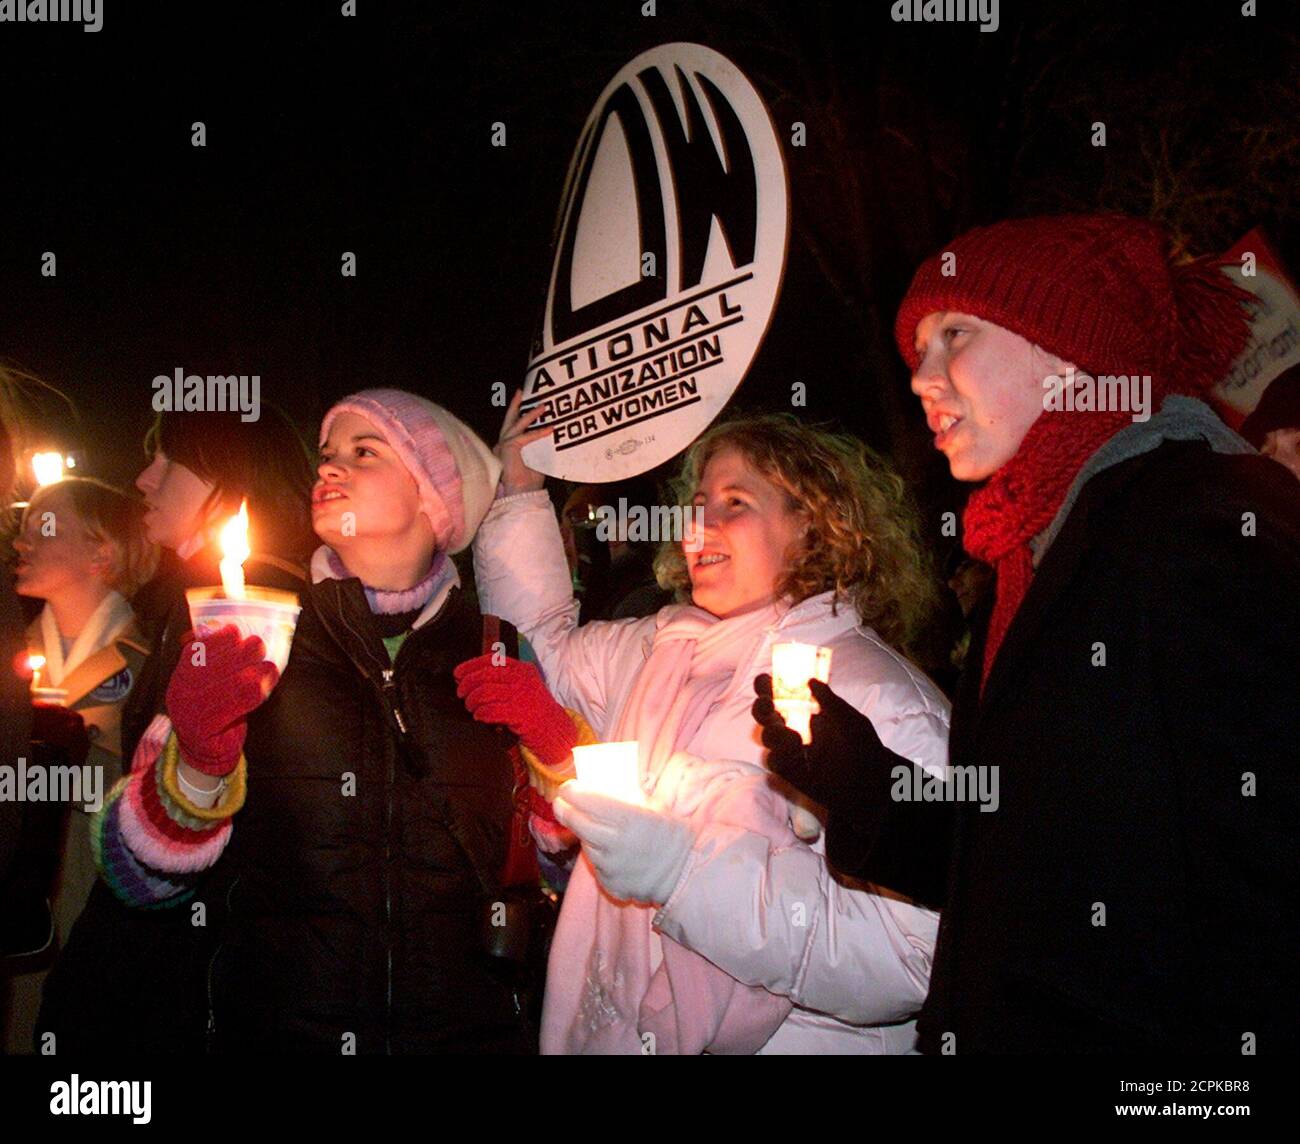 Los manifestantes pro-Choice participan en una vigilia a la luz de las velas frente a la Corte Suprema de Estados Unidos en Washington, 22 de enero de 2003. Los activistas de ambos lados del debate sobre el aborto se reunieron hoy para conmemorar el 30º aniversario de la sentencia de la Corte Suprema de Estados Unidos Roe vs. Wade, que legalizó el aborto. REUTERS/Brendan McDermid BM Foto de stock